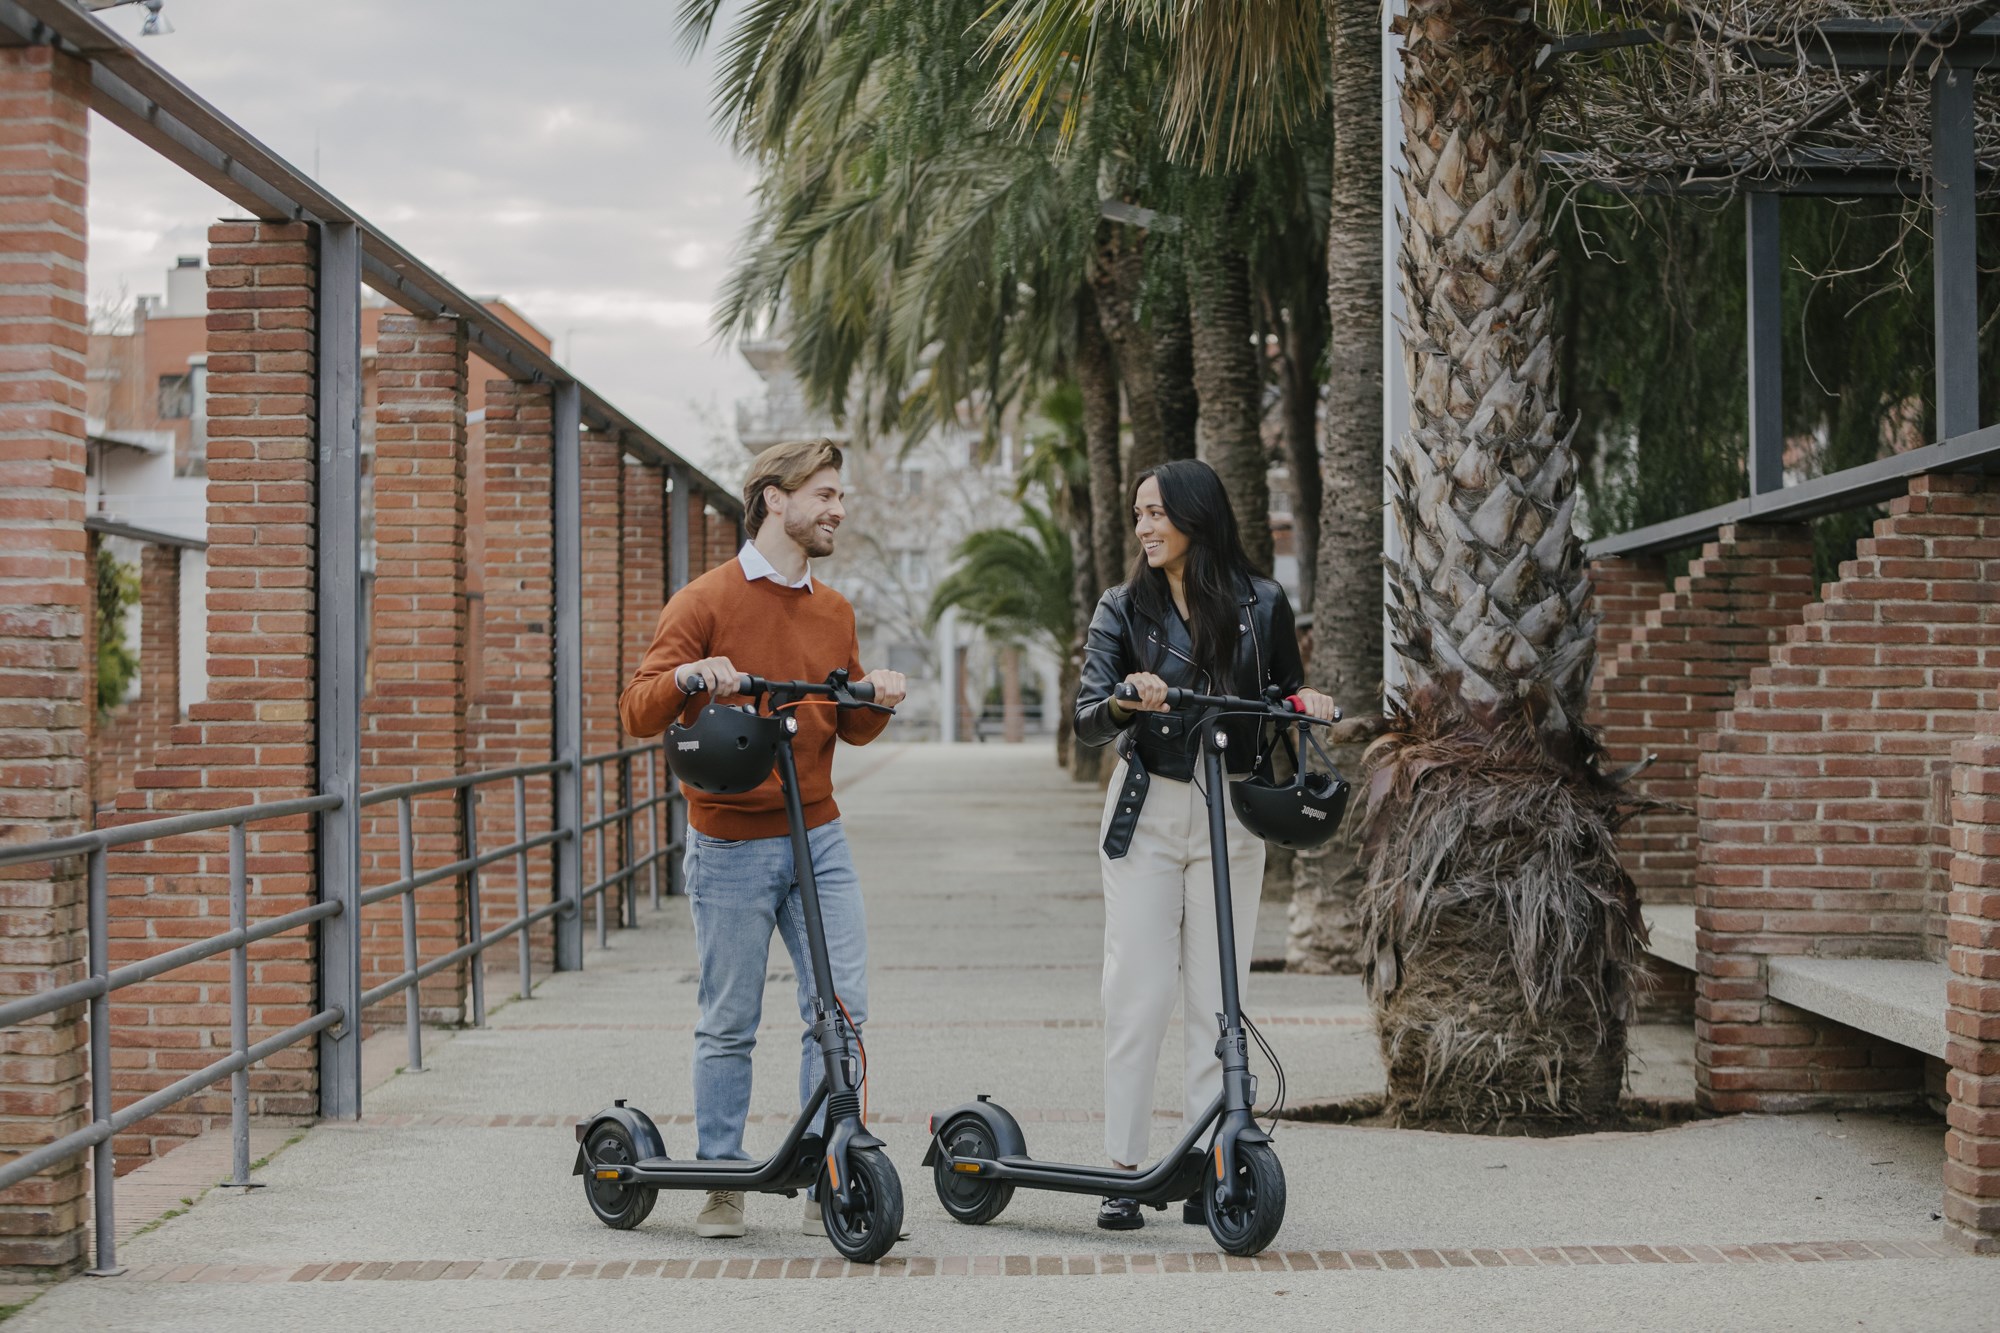 Segway-Ninebot'un scooter ürünleri Bilkom güvencesiyle Türkiye'de